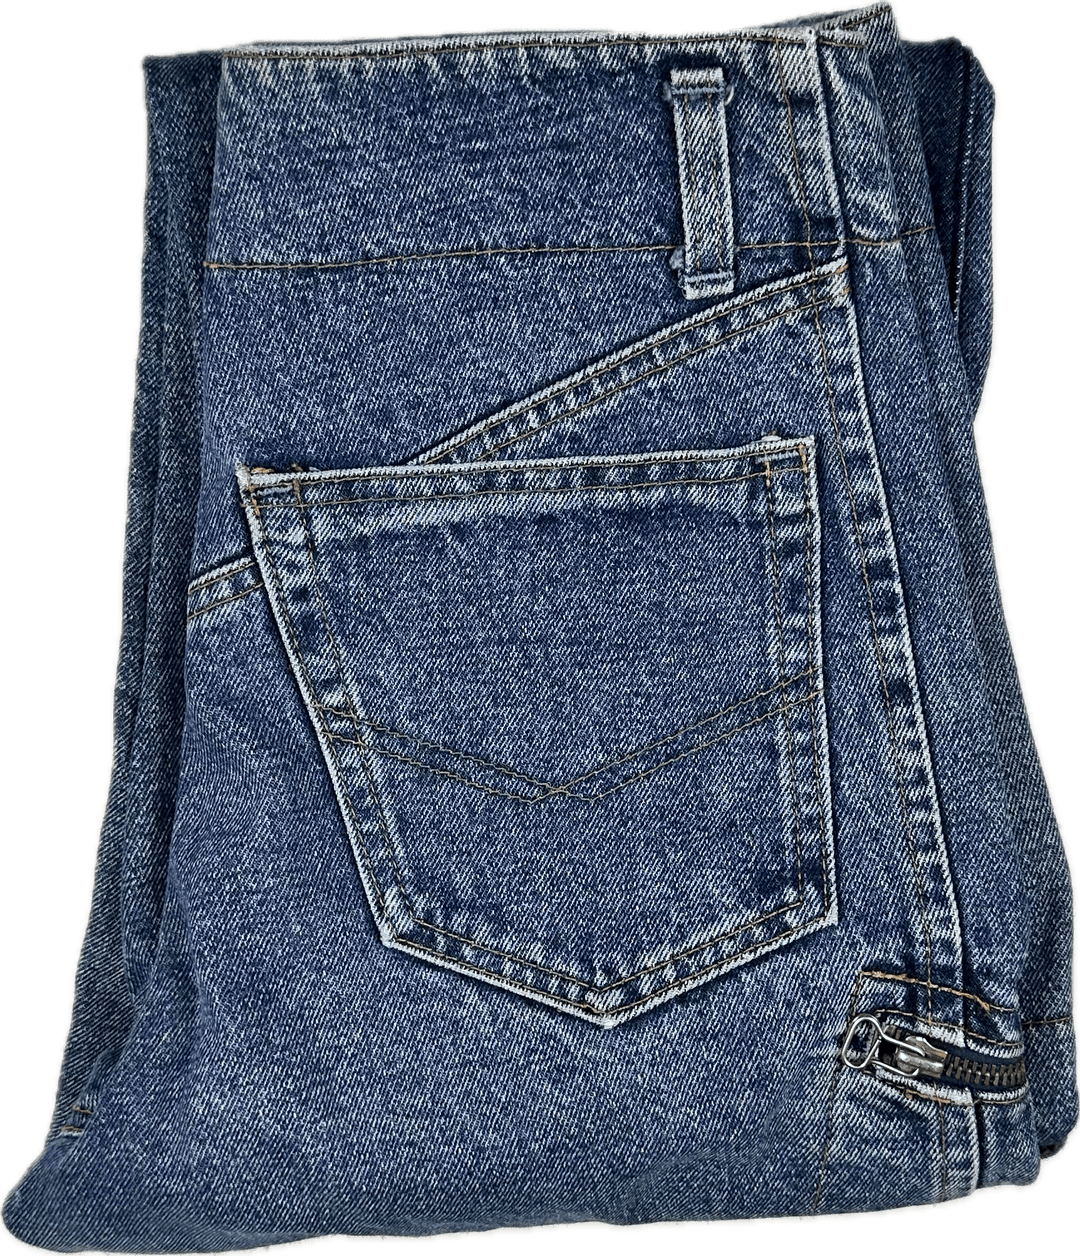 Marcel Dachet 80s Vintage Button Fly Jeans - Suit Size 6 - Jean Pool